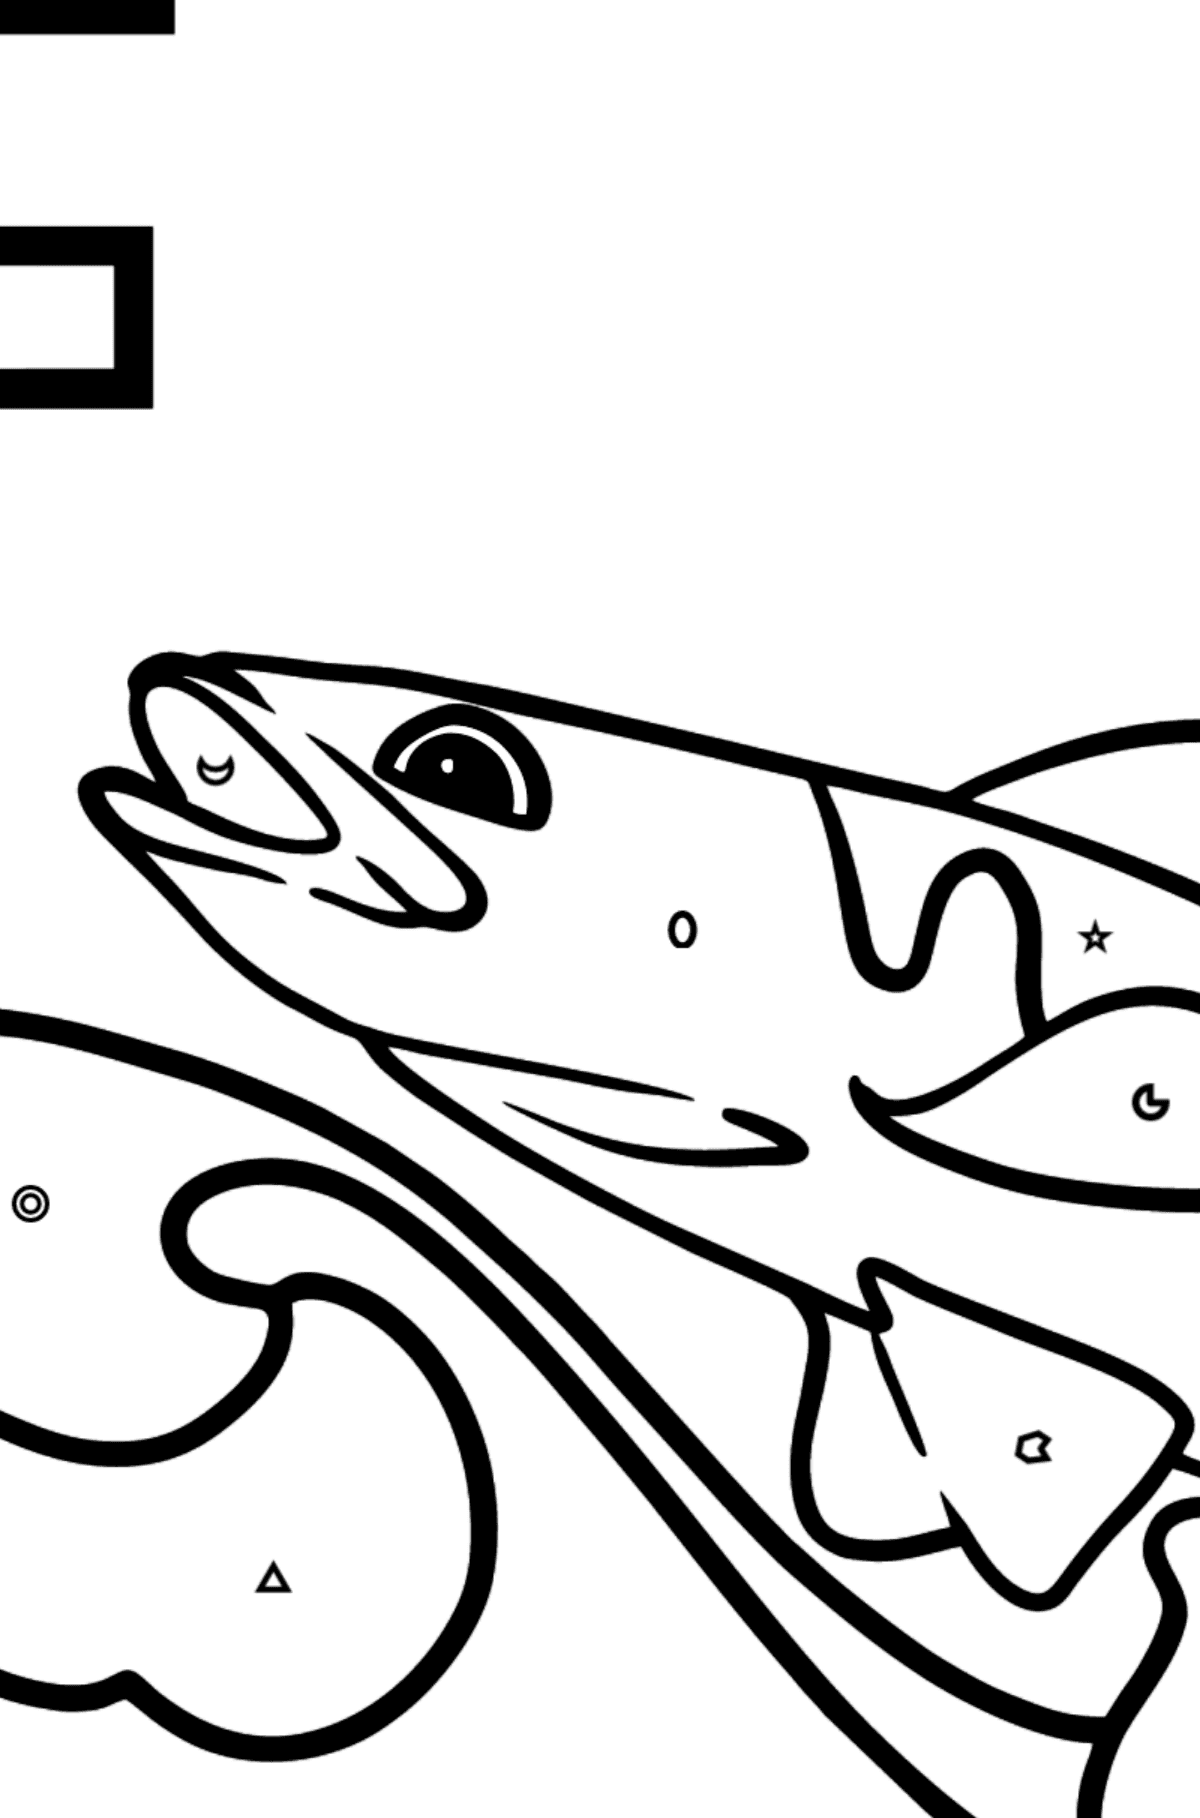 Раскраска Буква F Английский алфавит - FISH - Картинка высокого качества для Детей